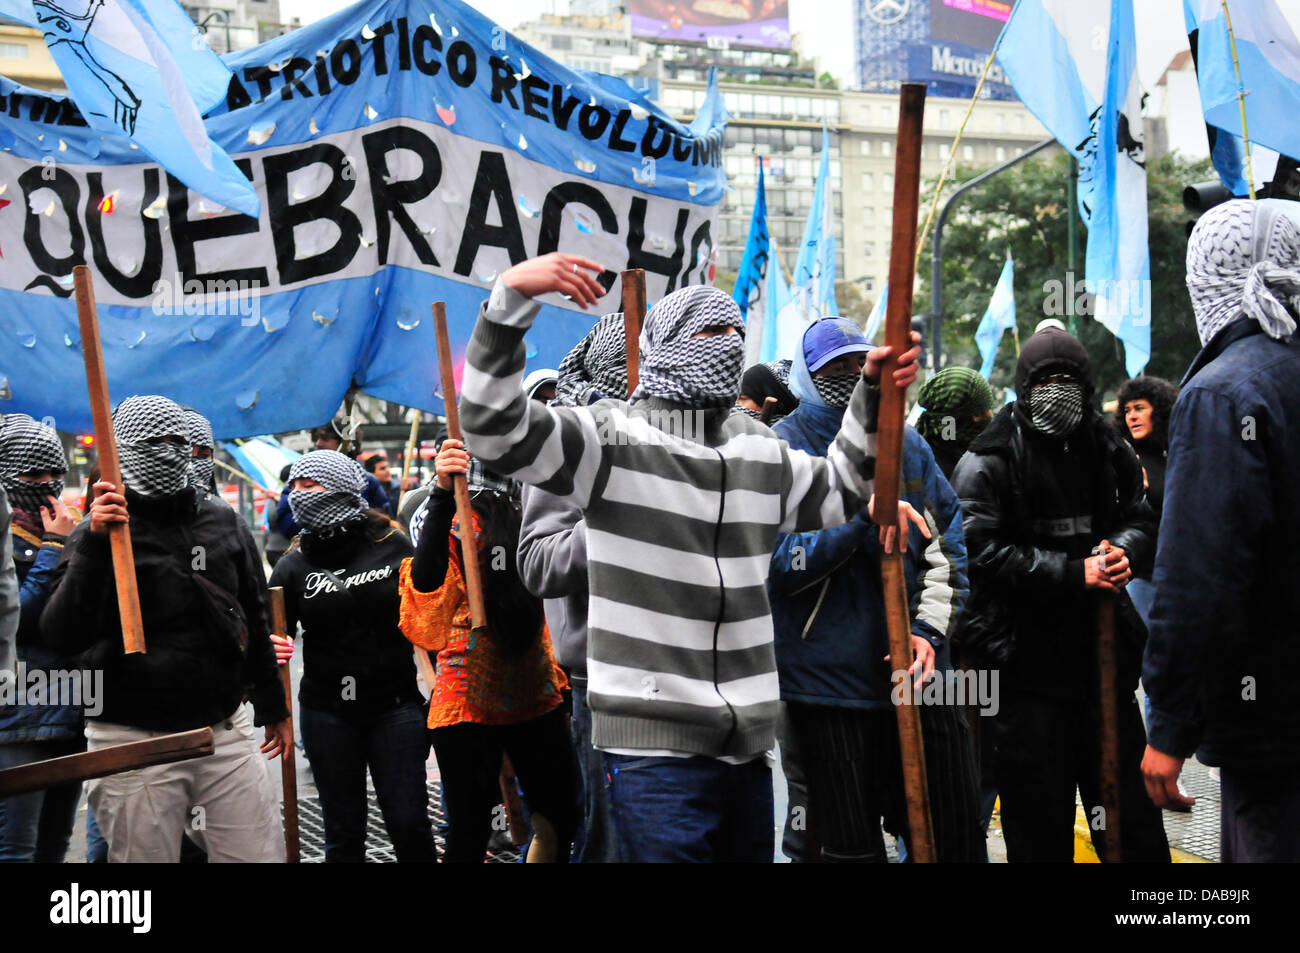 Argentina. Il 9 luglio 2013. M.P.R. I membri di quebracho protestato fuori Chevron uffici in Argentina dall'accordo hanno firmato l'estrazione di olio da fracking Credito: Diego Espinosa/Alamy Live News Foto Stock